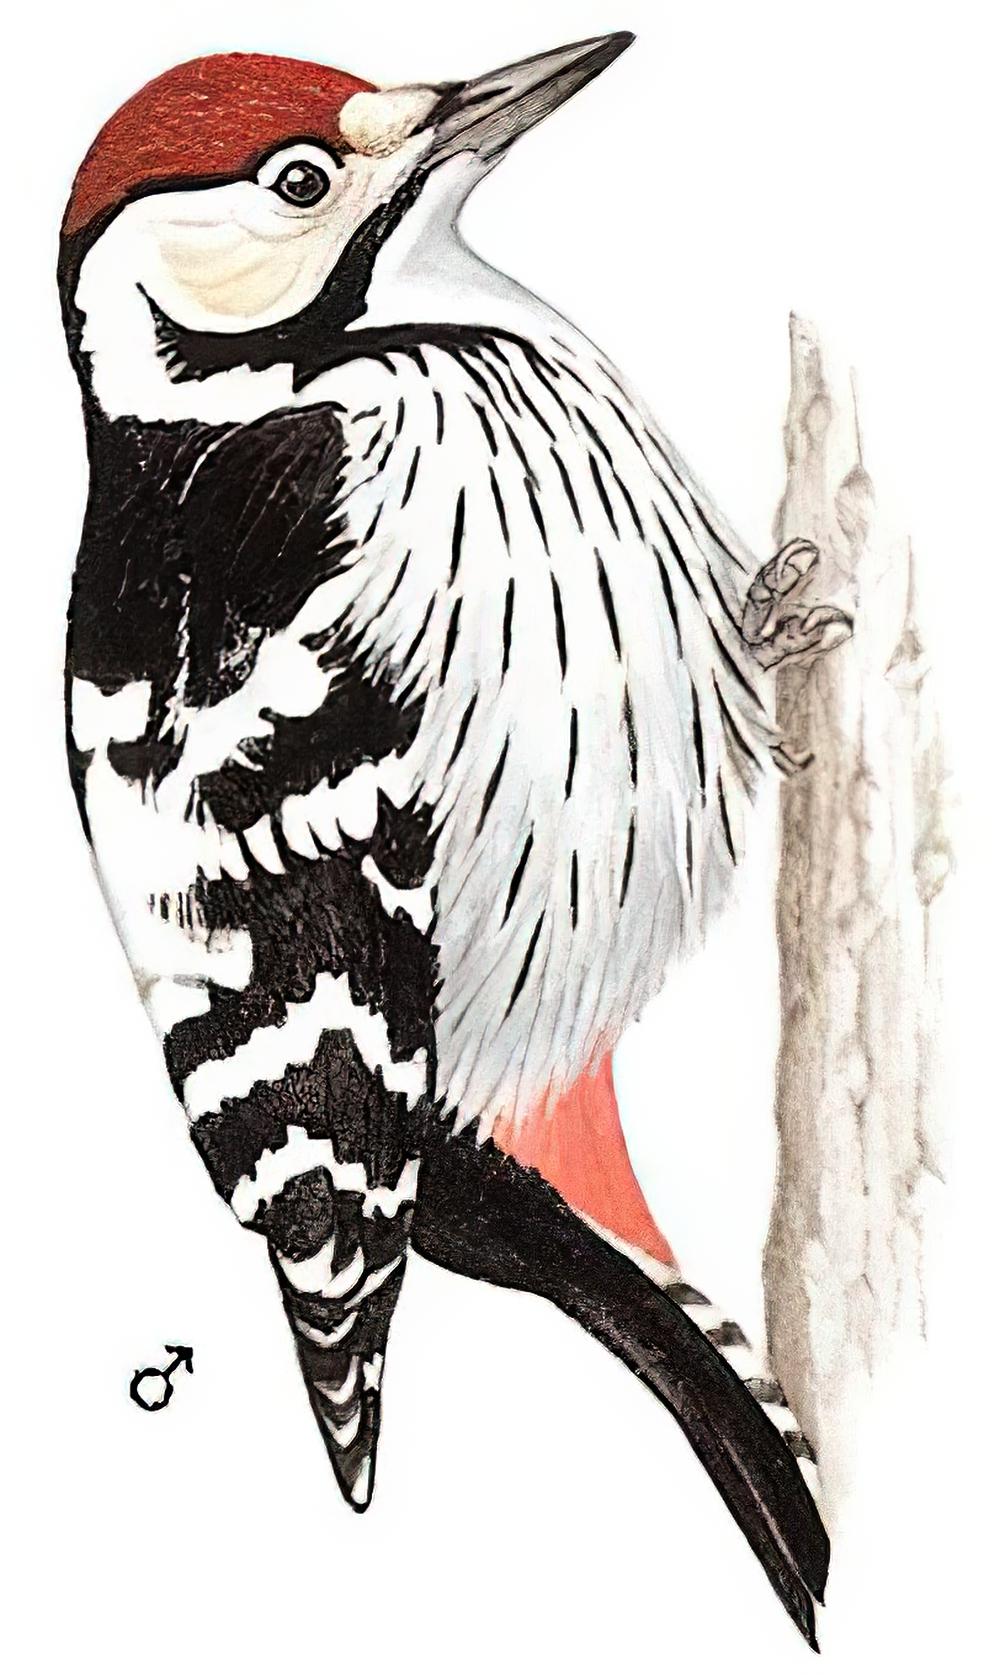 白背啄木鸟 / White-backed Woodpecker / Dendrocopos leucotos